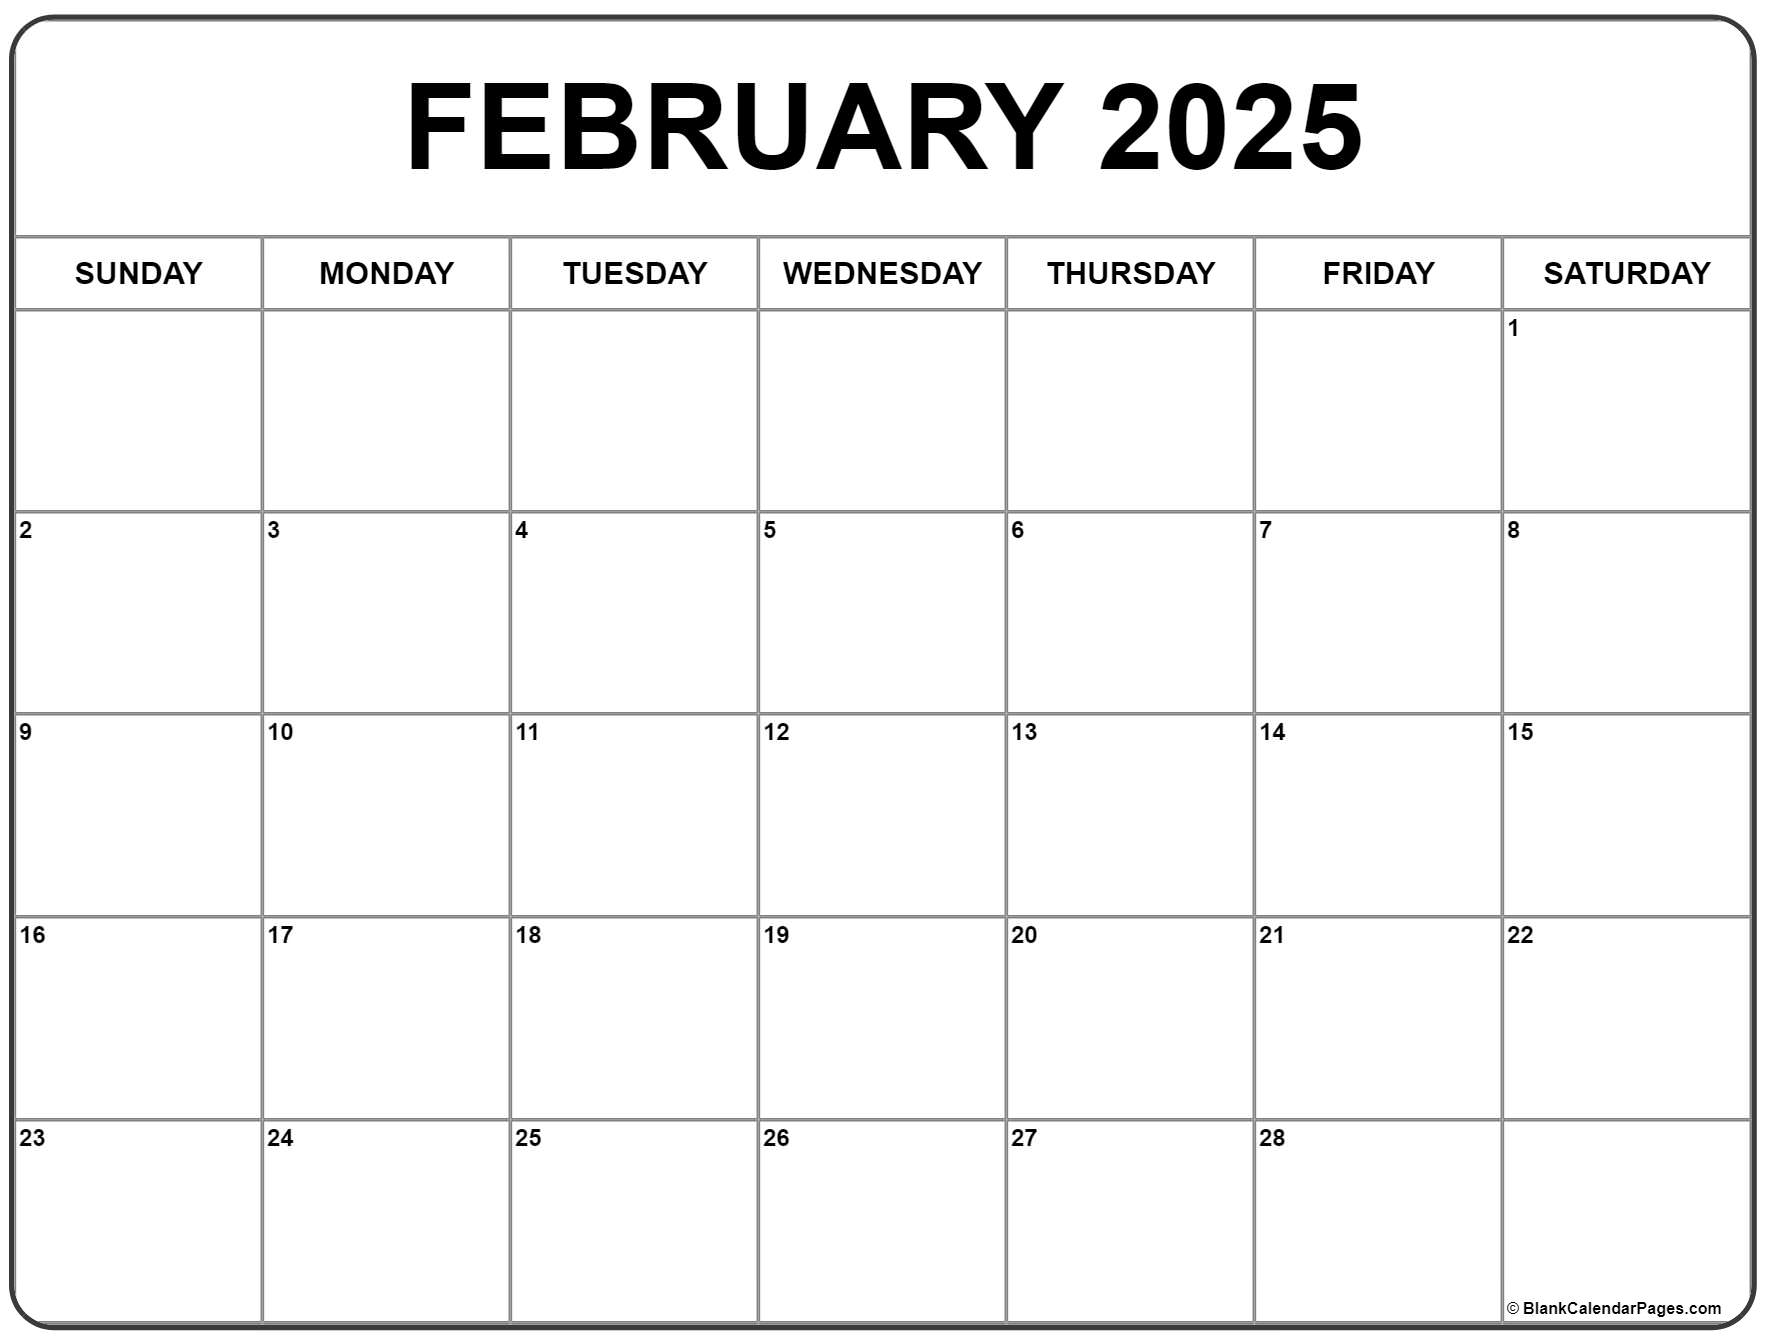 February 2025 calendar free printable calendar